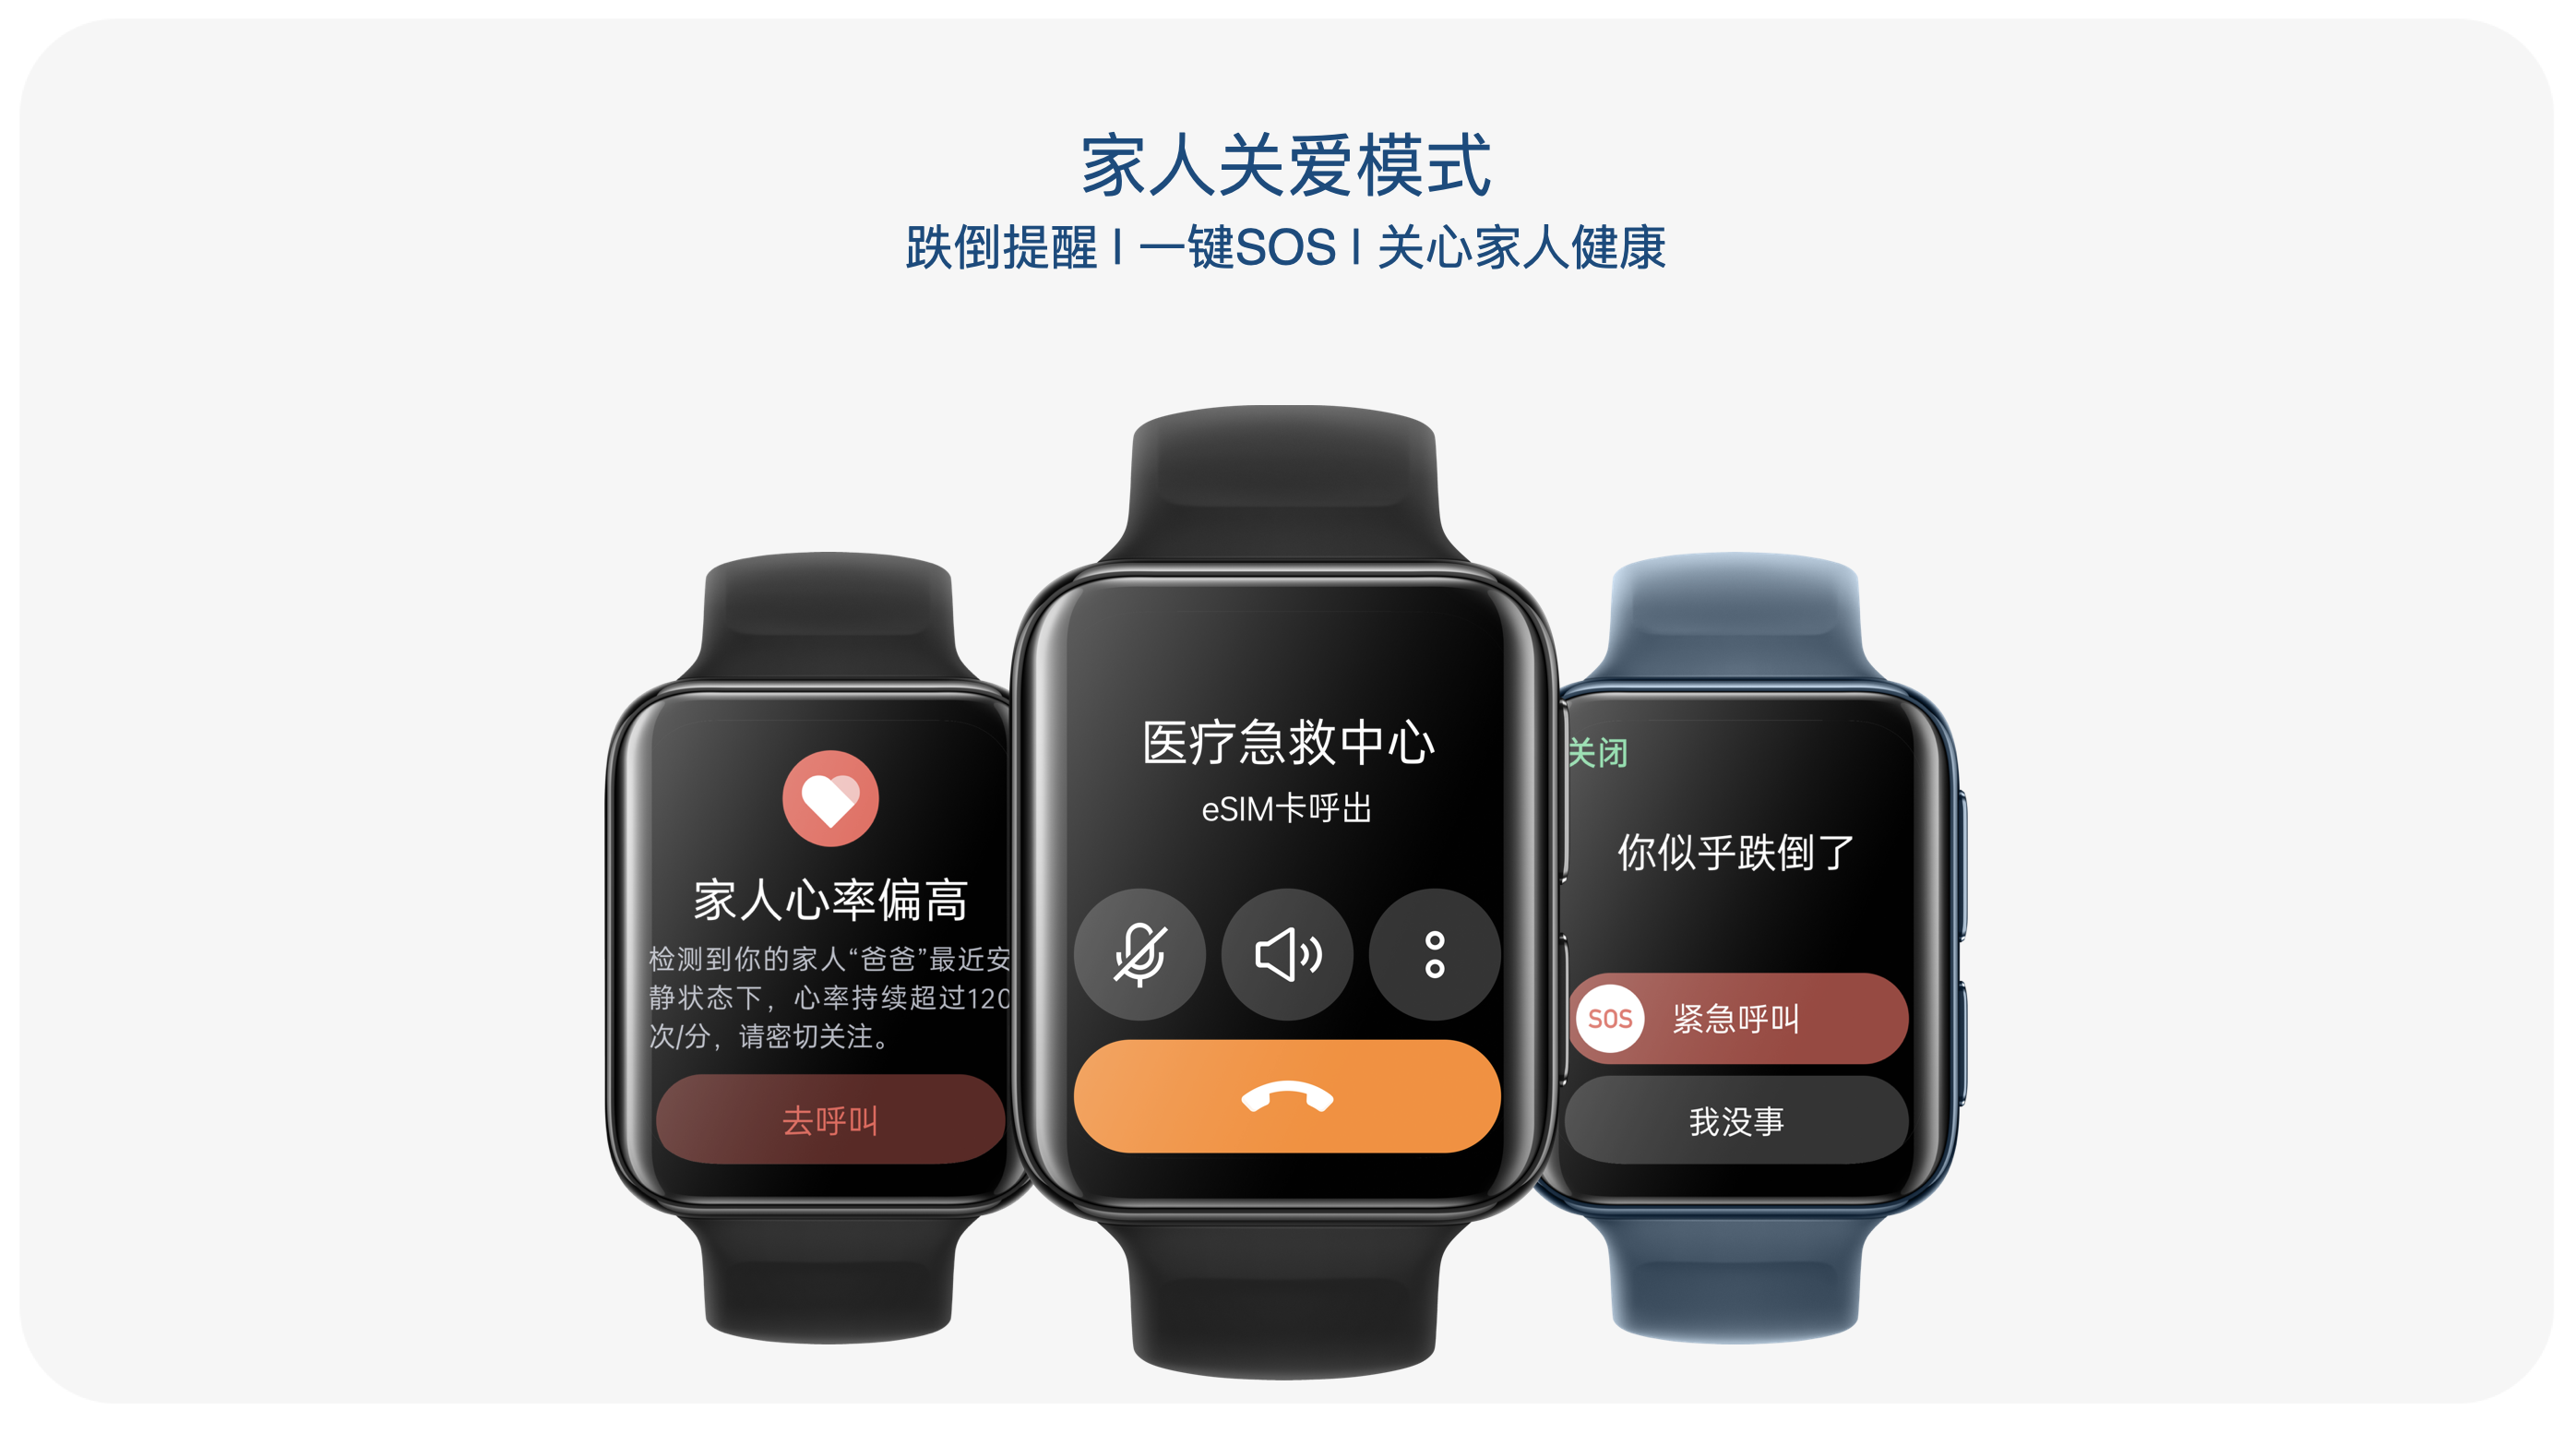 OPPO Watch 2系列正式發布打造新一代安卓全智能手錶旗艦